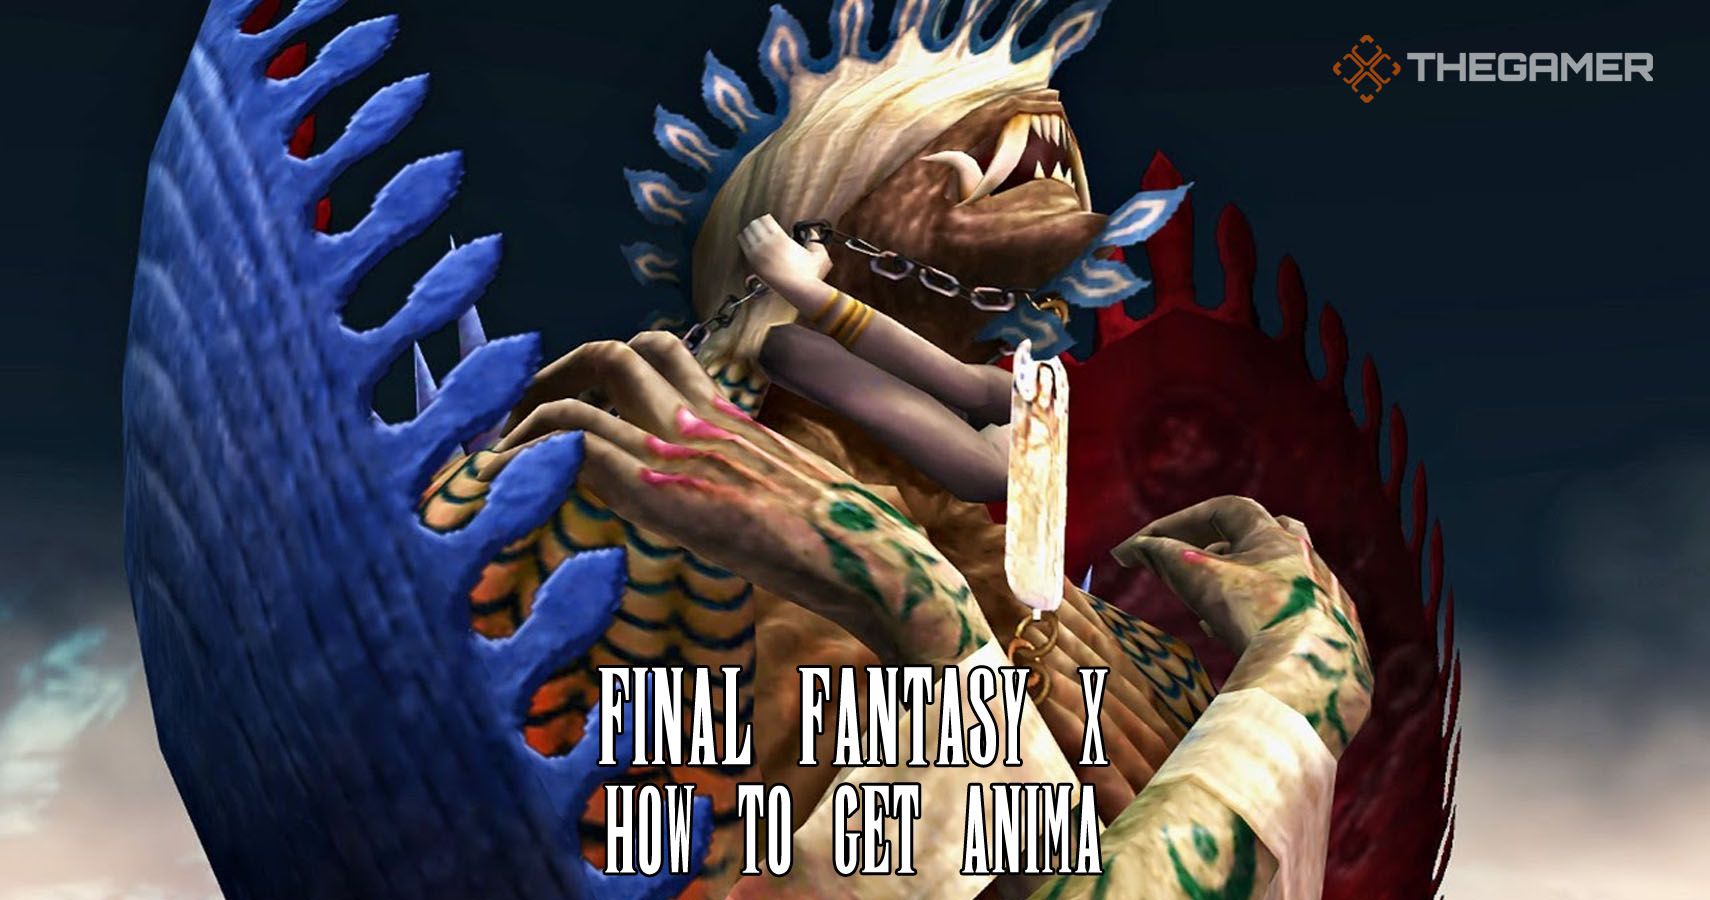 Final Fantasy 10 How To Get Anima